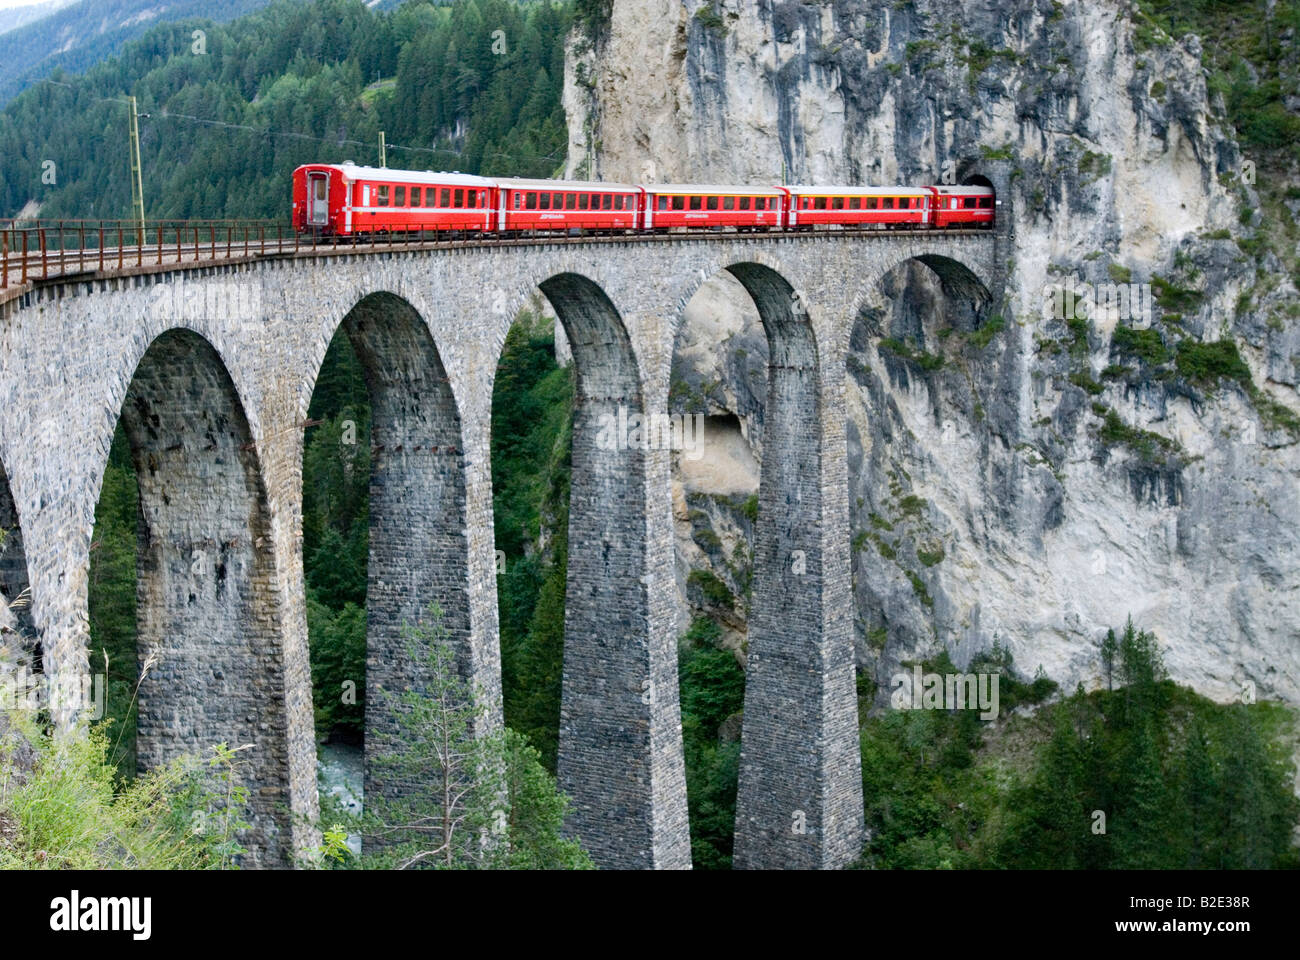 Suisse Grisons Filisur train rouge de la Compagnie des chemins de fer rhétique sur viaduc ferroviaire de l'Albula, dans la région de Bernina Banque D'Images